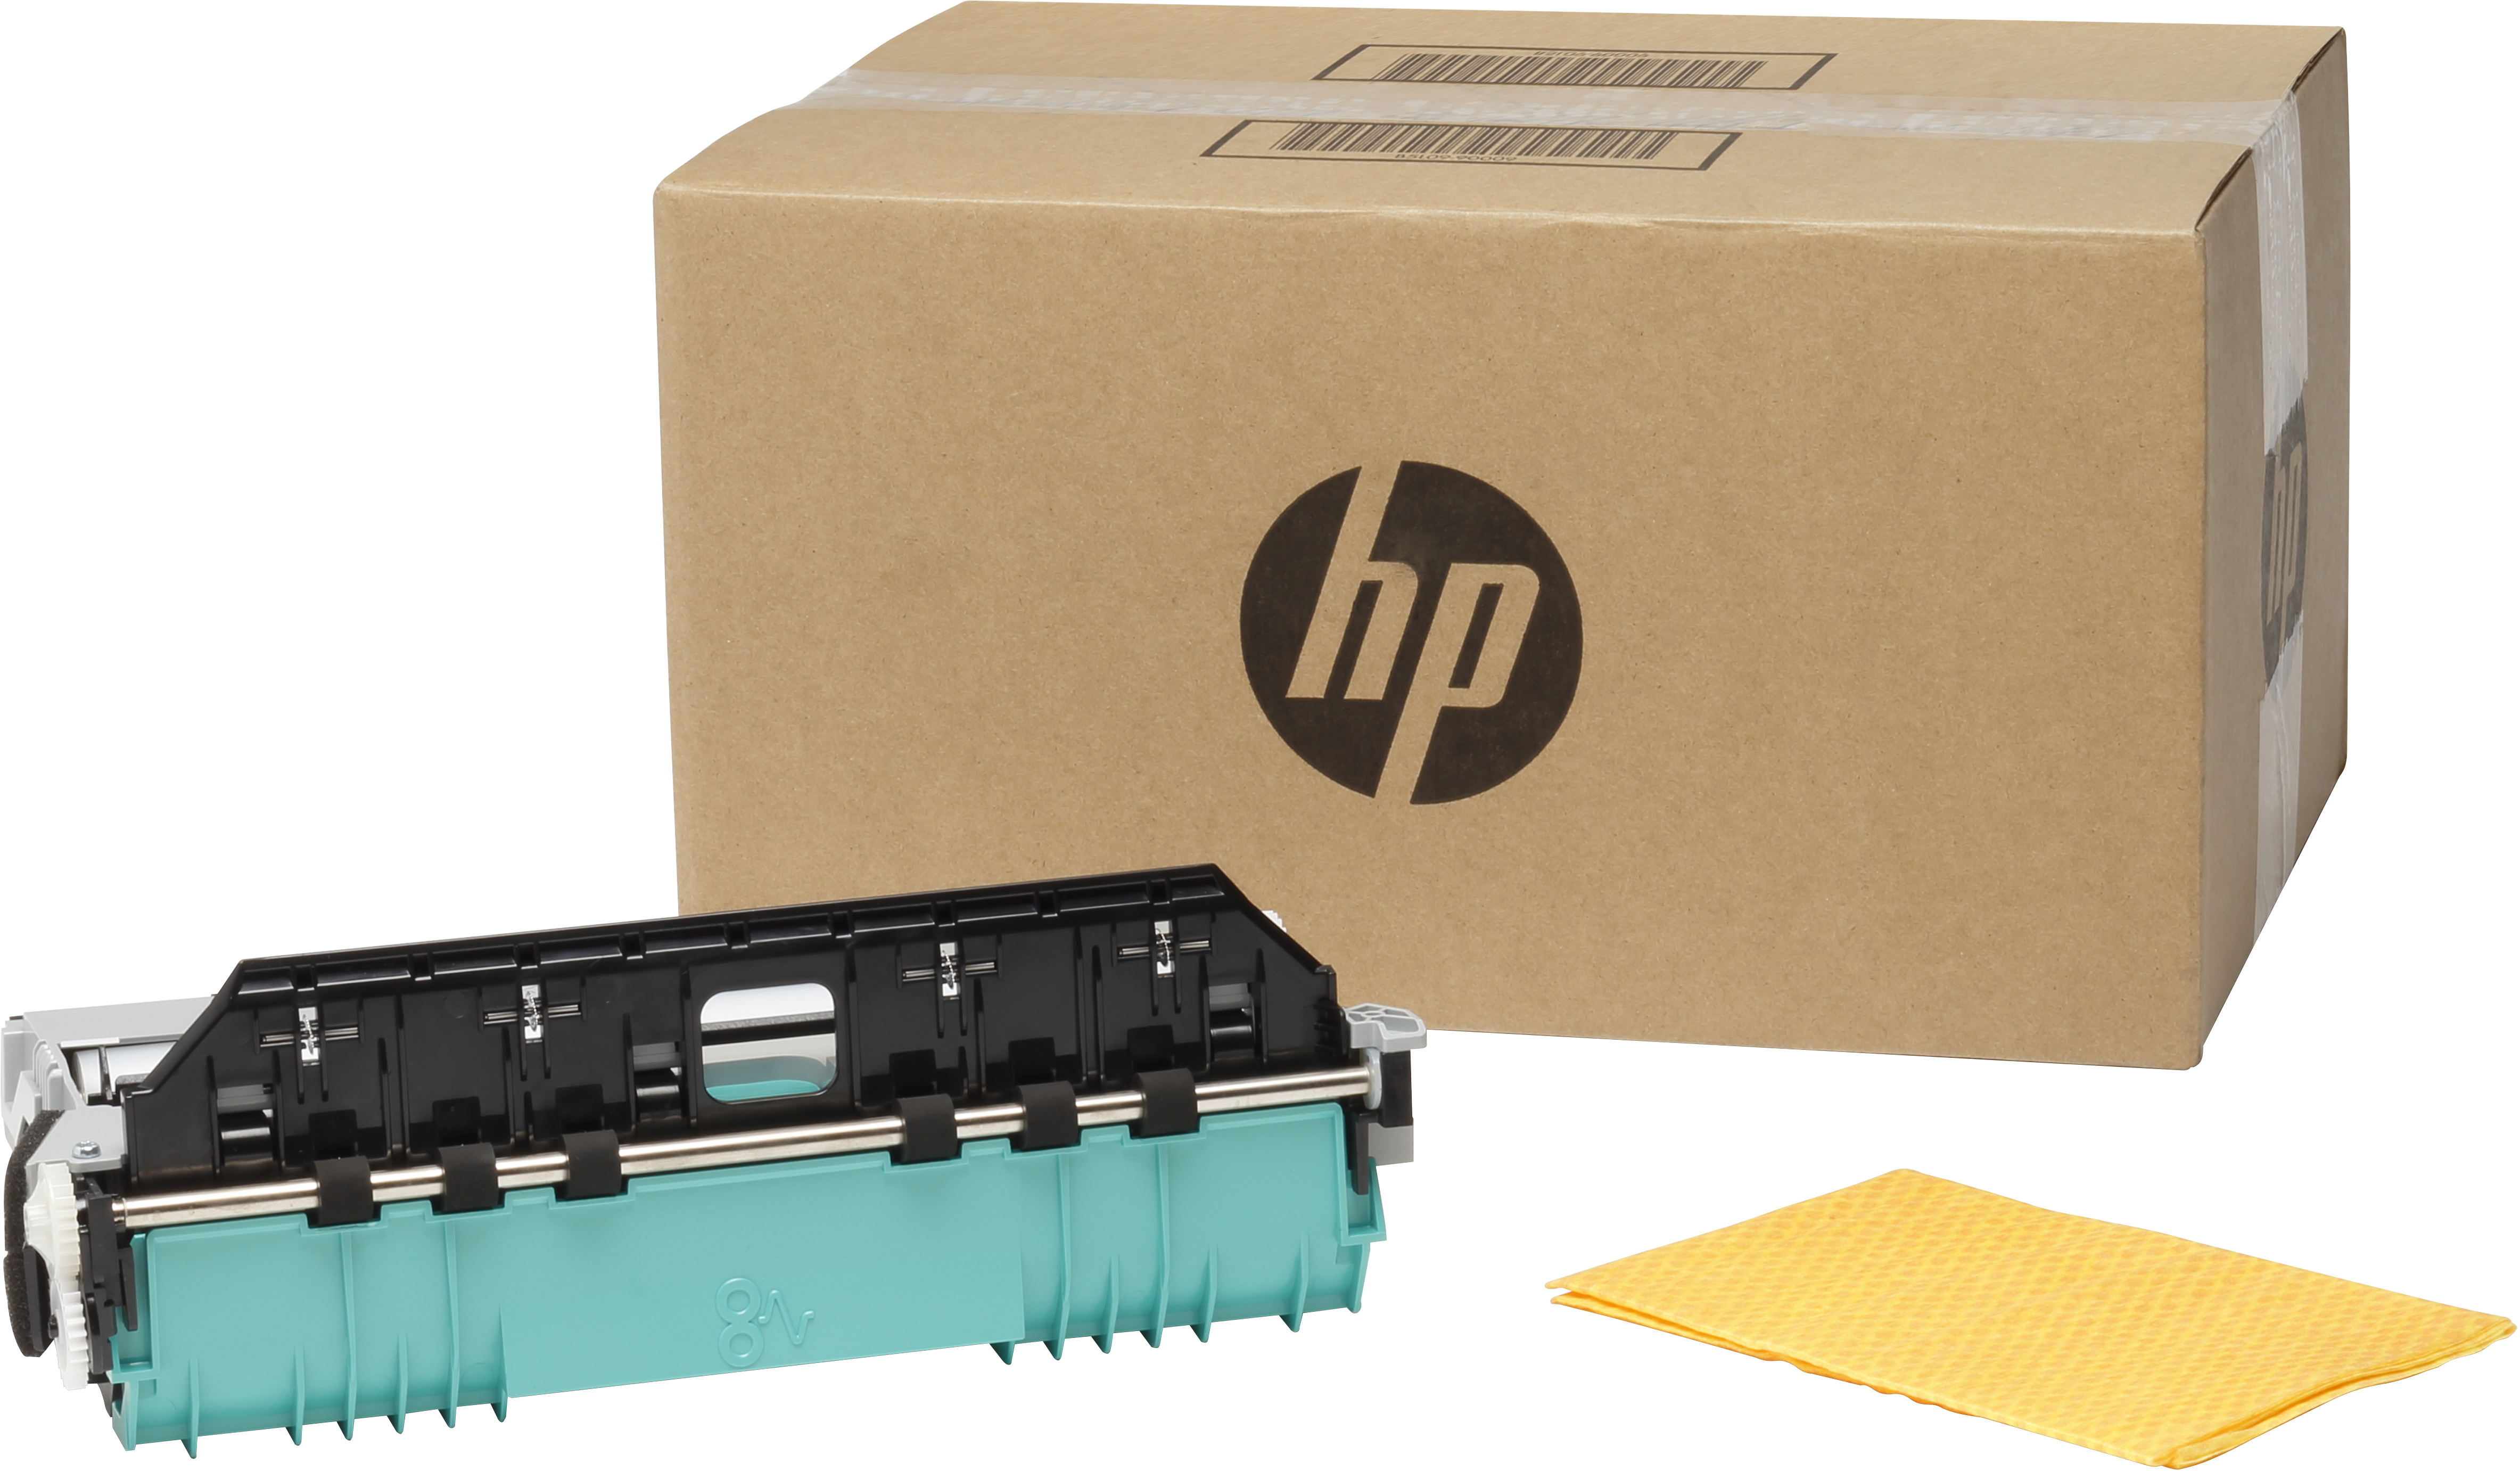 HP OfficeJet Enterprise-Tintensammeleinheit - Abfallbehälter - Schwarz - Grau - HP Officejet Enterprise Color X585 - X555 - Business - Unternehmen - 280 mm - 158 mm